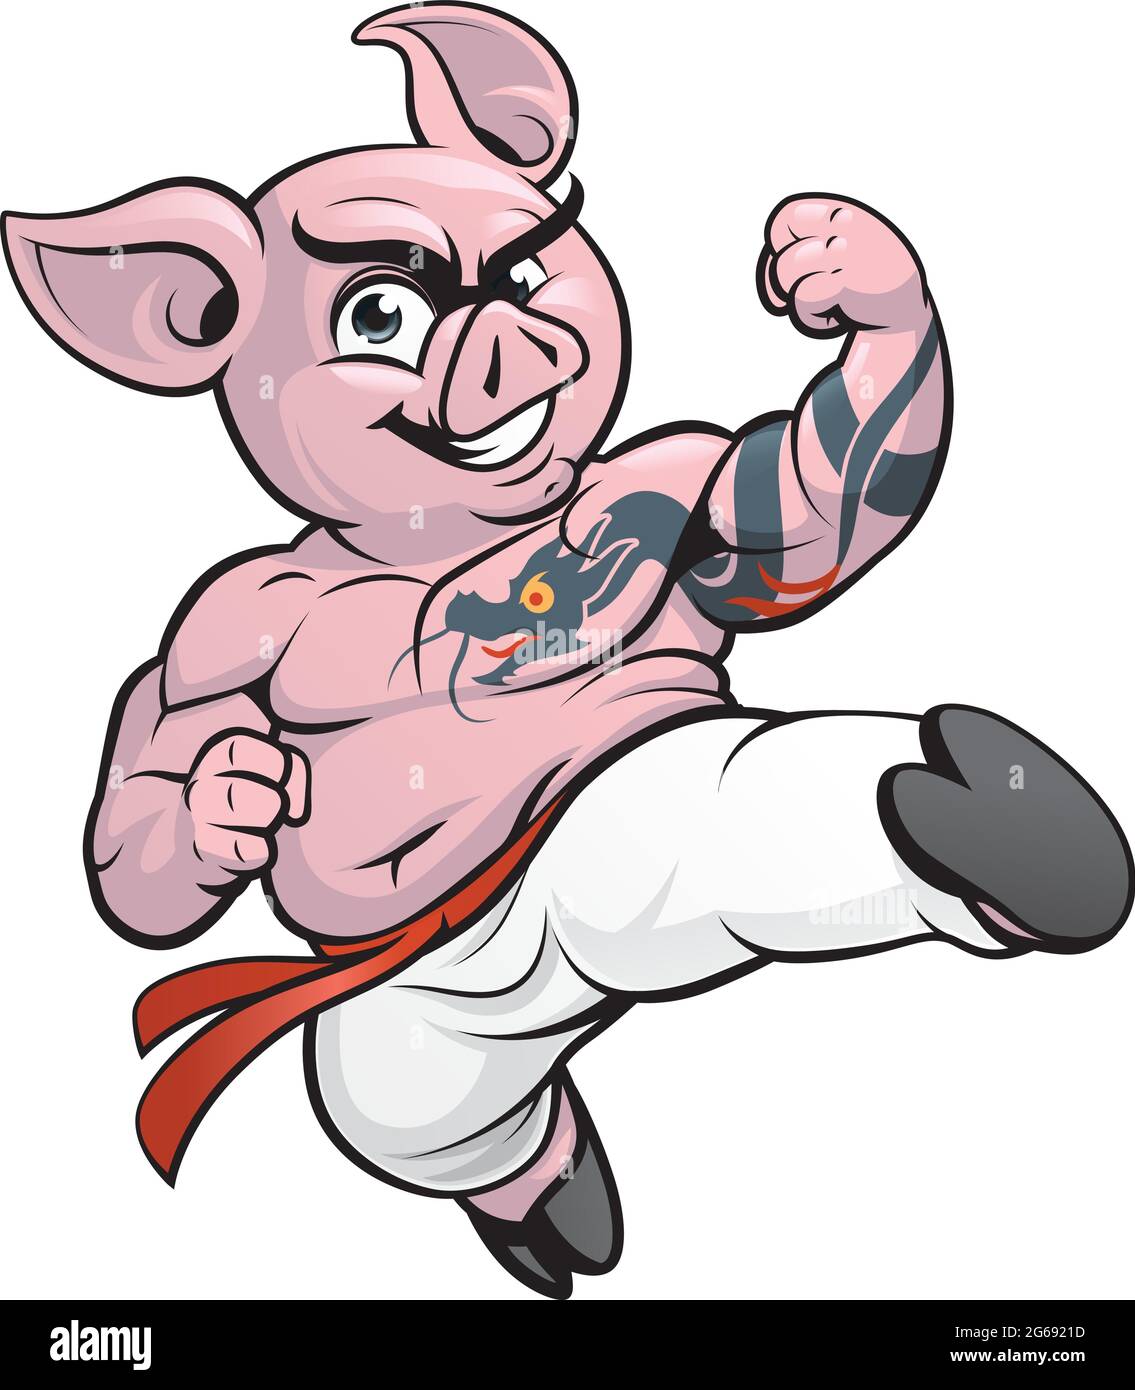 Cartoon-Illustration eines Schwein Karate Kämpfer , tun einen fliegenden Kick Stock Vektor